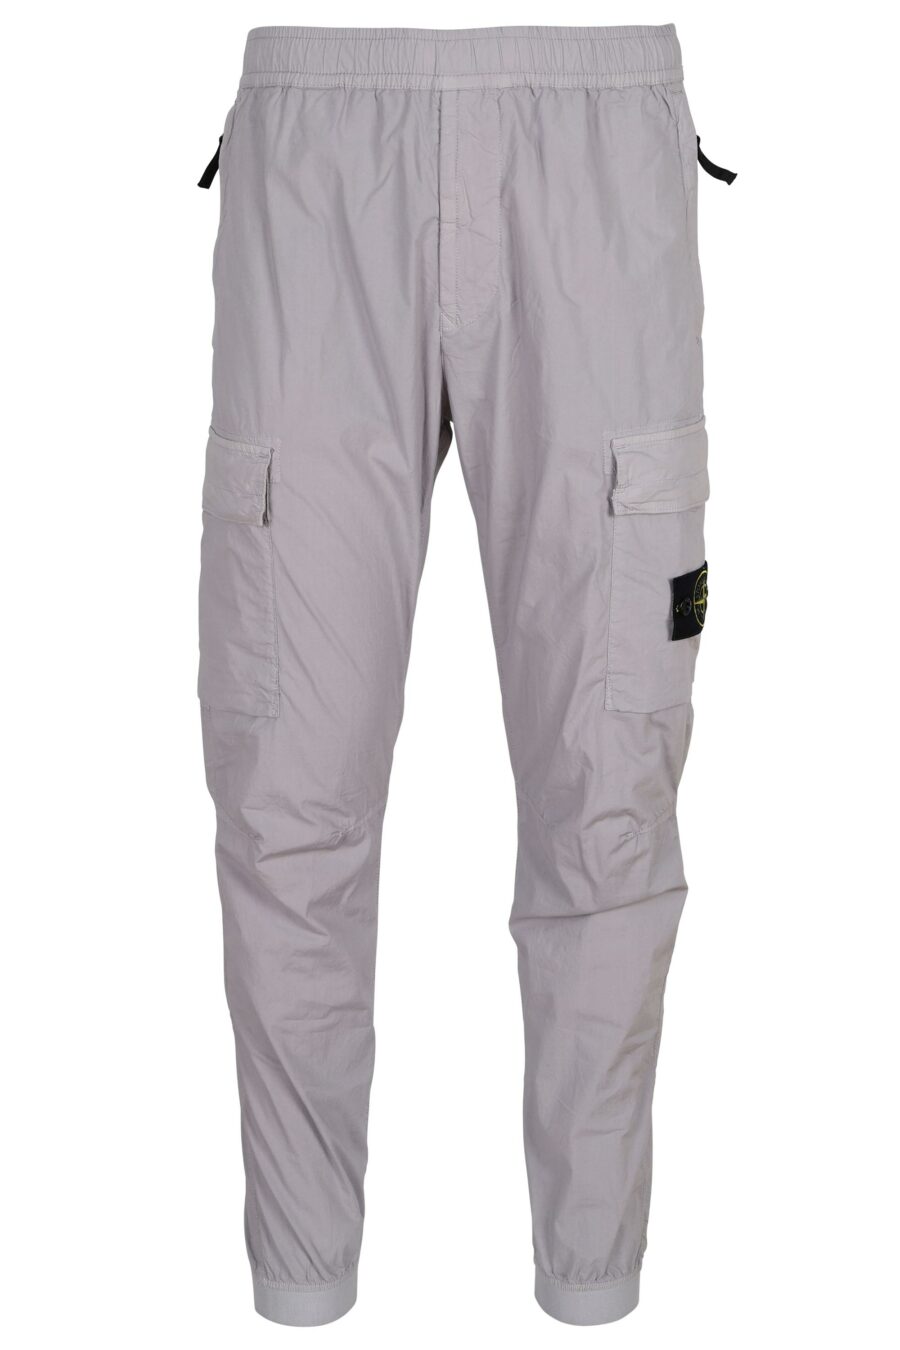 Pantalon fuselé gris lilas avec patch boussole logo - 8052572926846